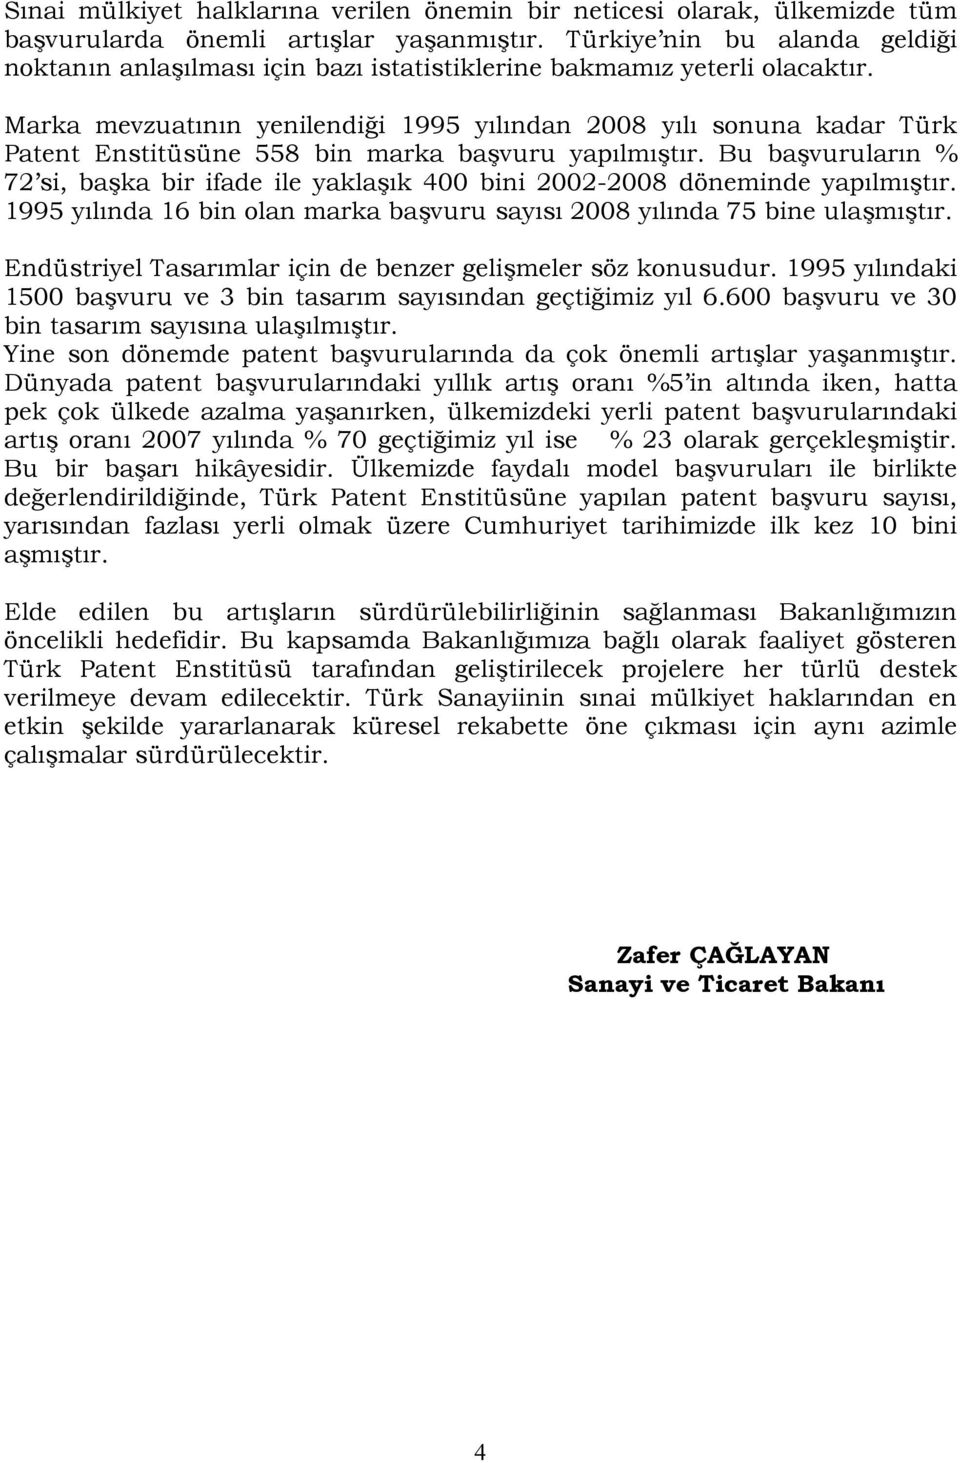 Marka mevzuatının yenilendiği 1995 yılından 2008 yılı sonuna kadar Türk Patent Enstitüsüne 558 bin marka başvuru yapılmıştır.